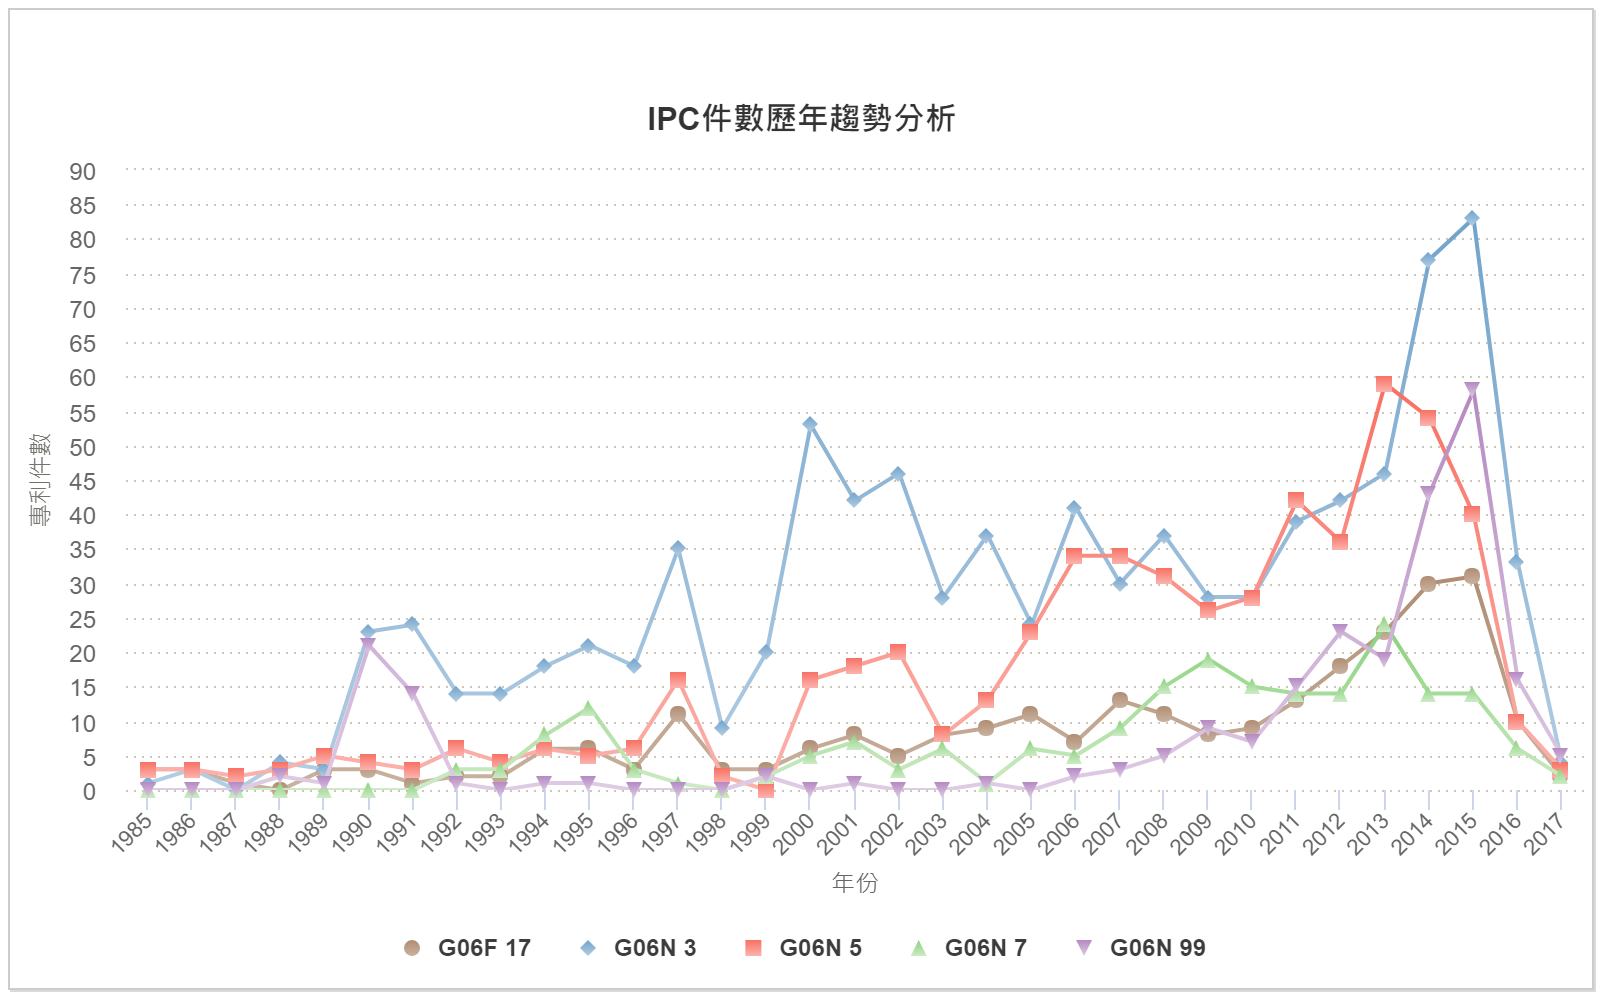 IPC件數歷年趨勢分析圖–歐盟